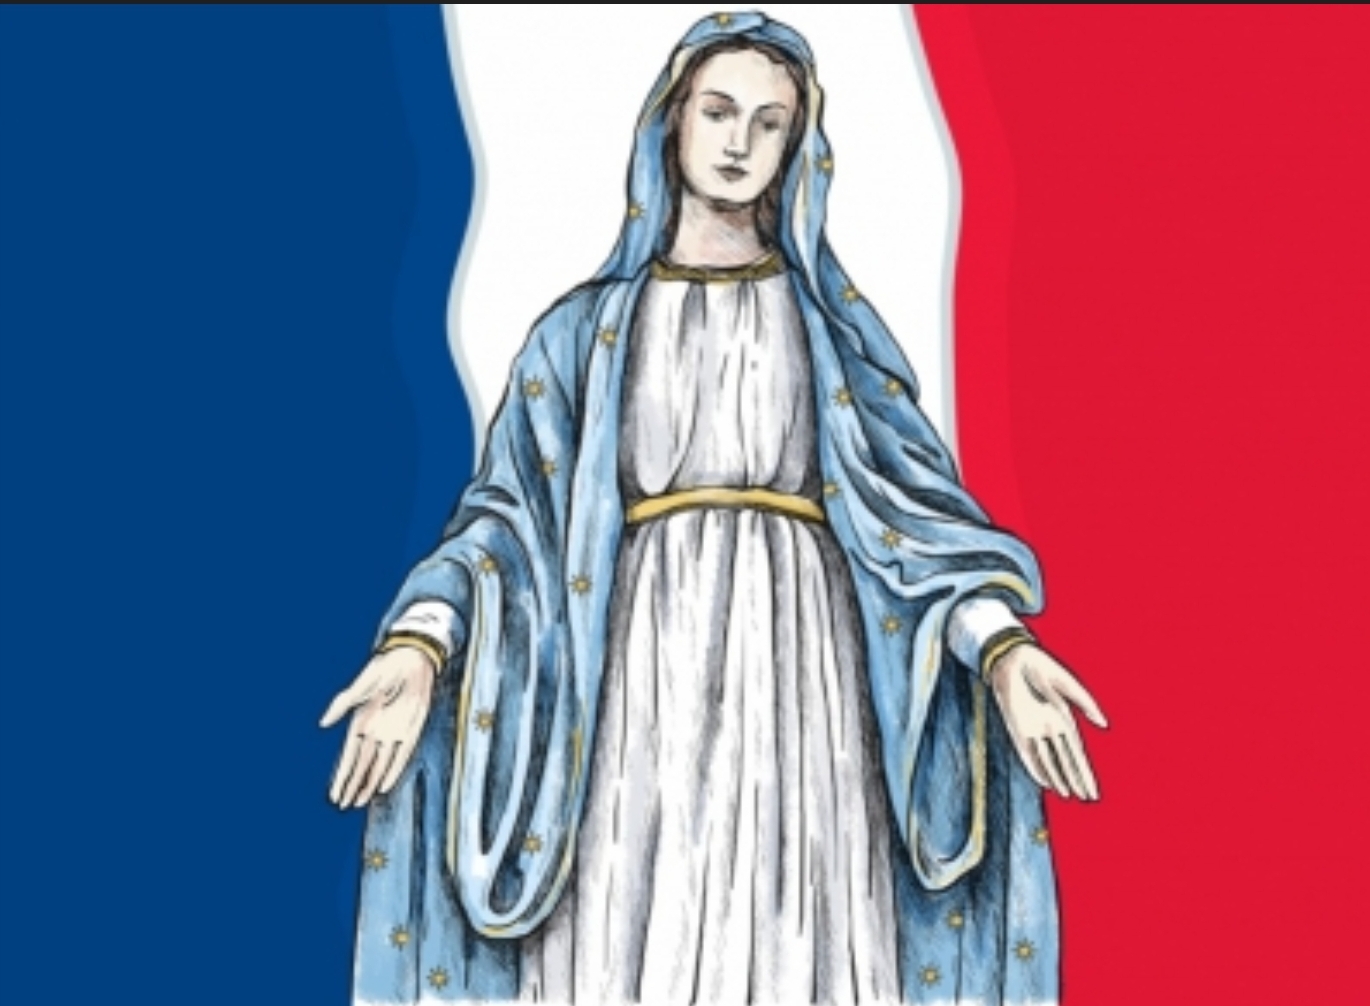 La vierge Marie devant le drapeau français